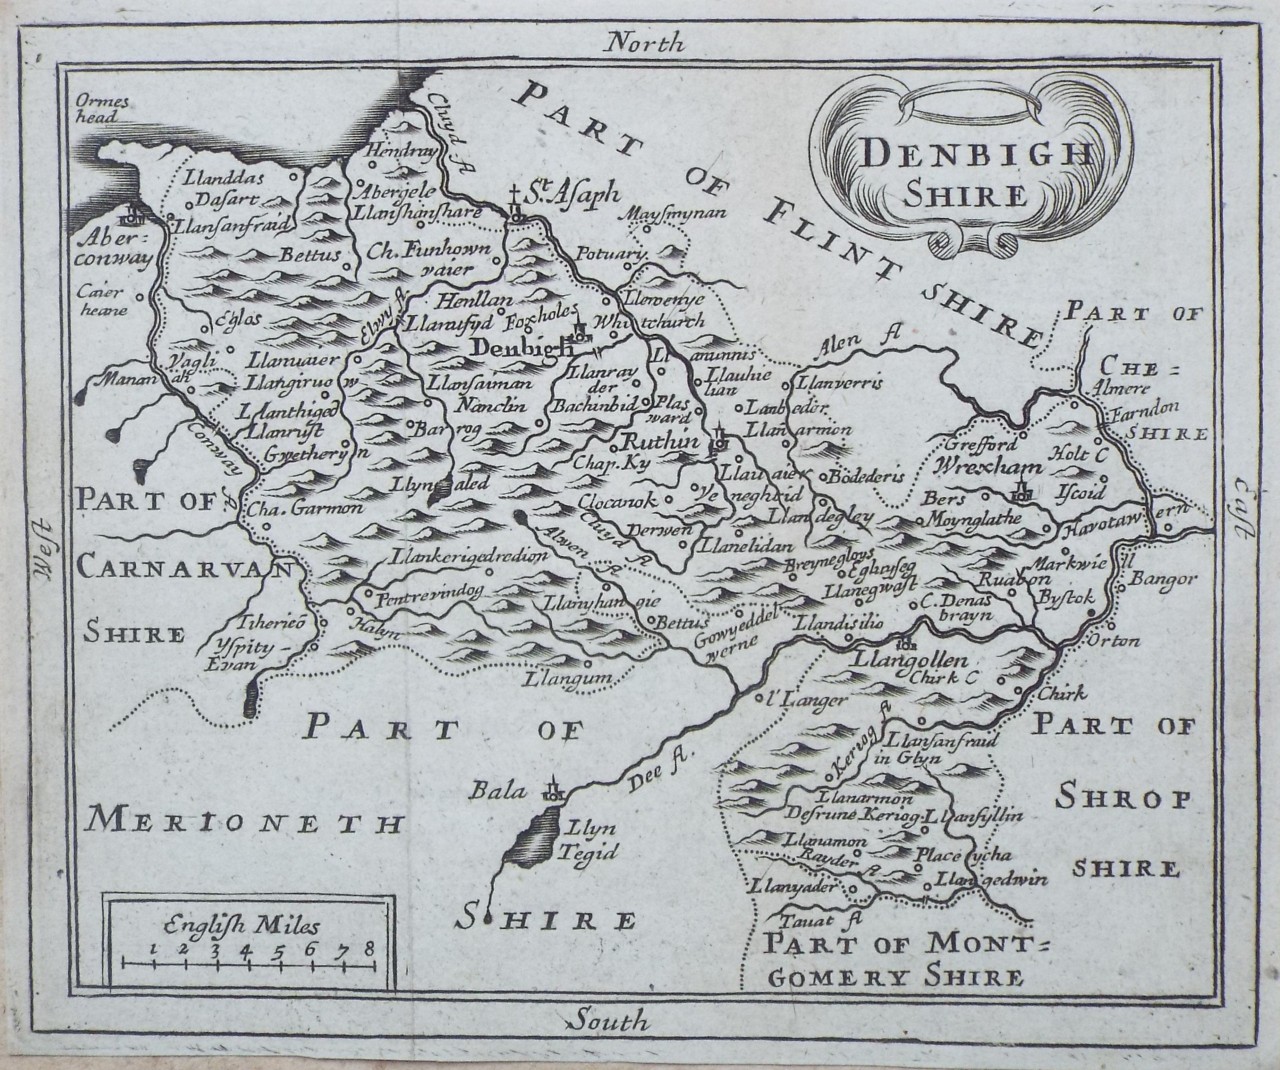 Map of Denbighshire